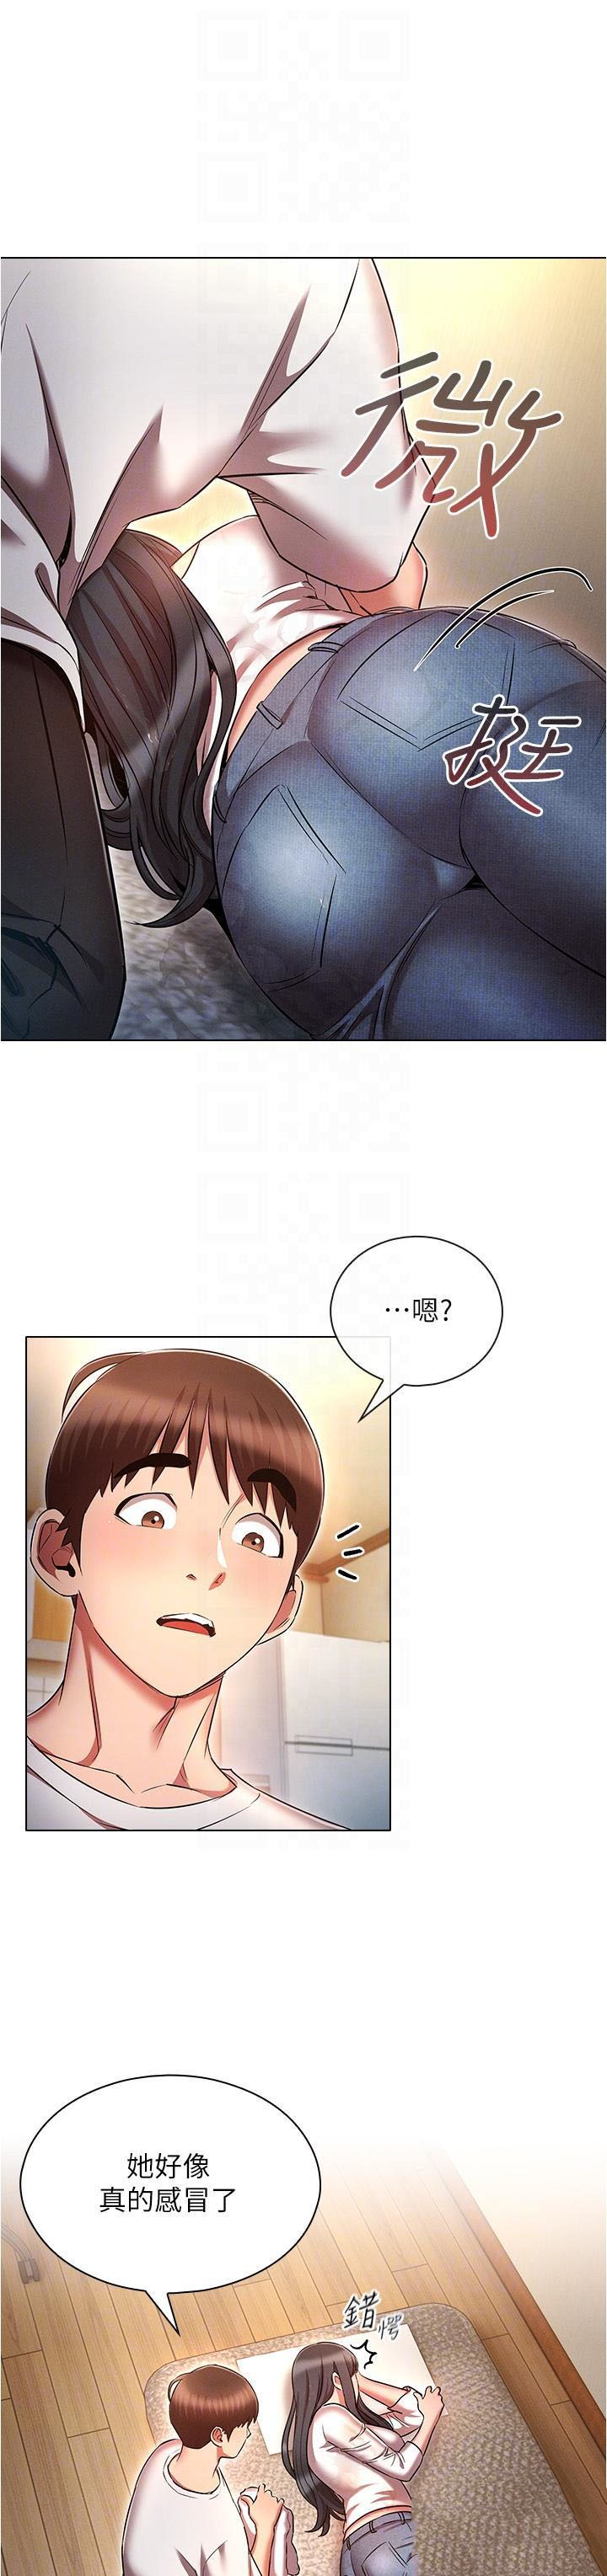 韩国污漫画 魯蛇的多重宇宙 第45话 我要被开苞了吗?! 27